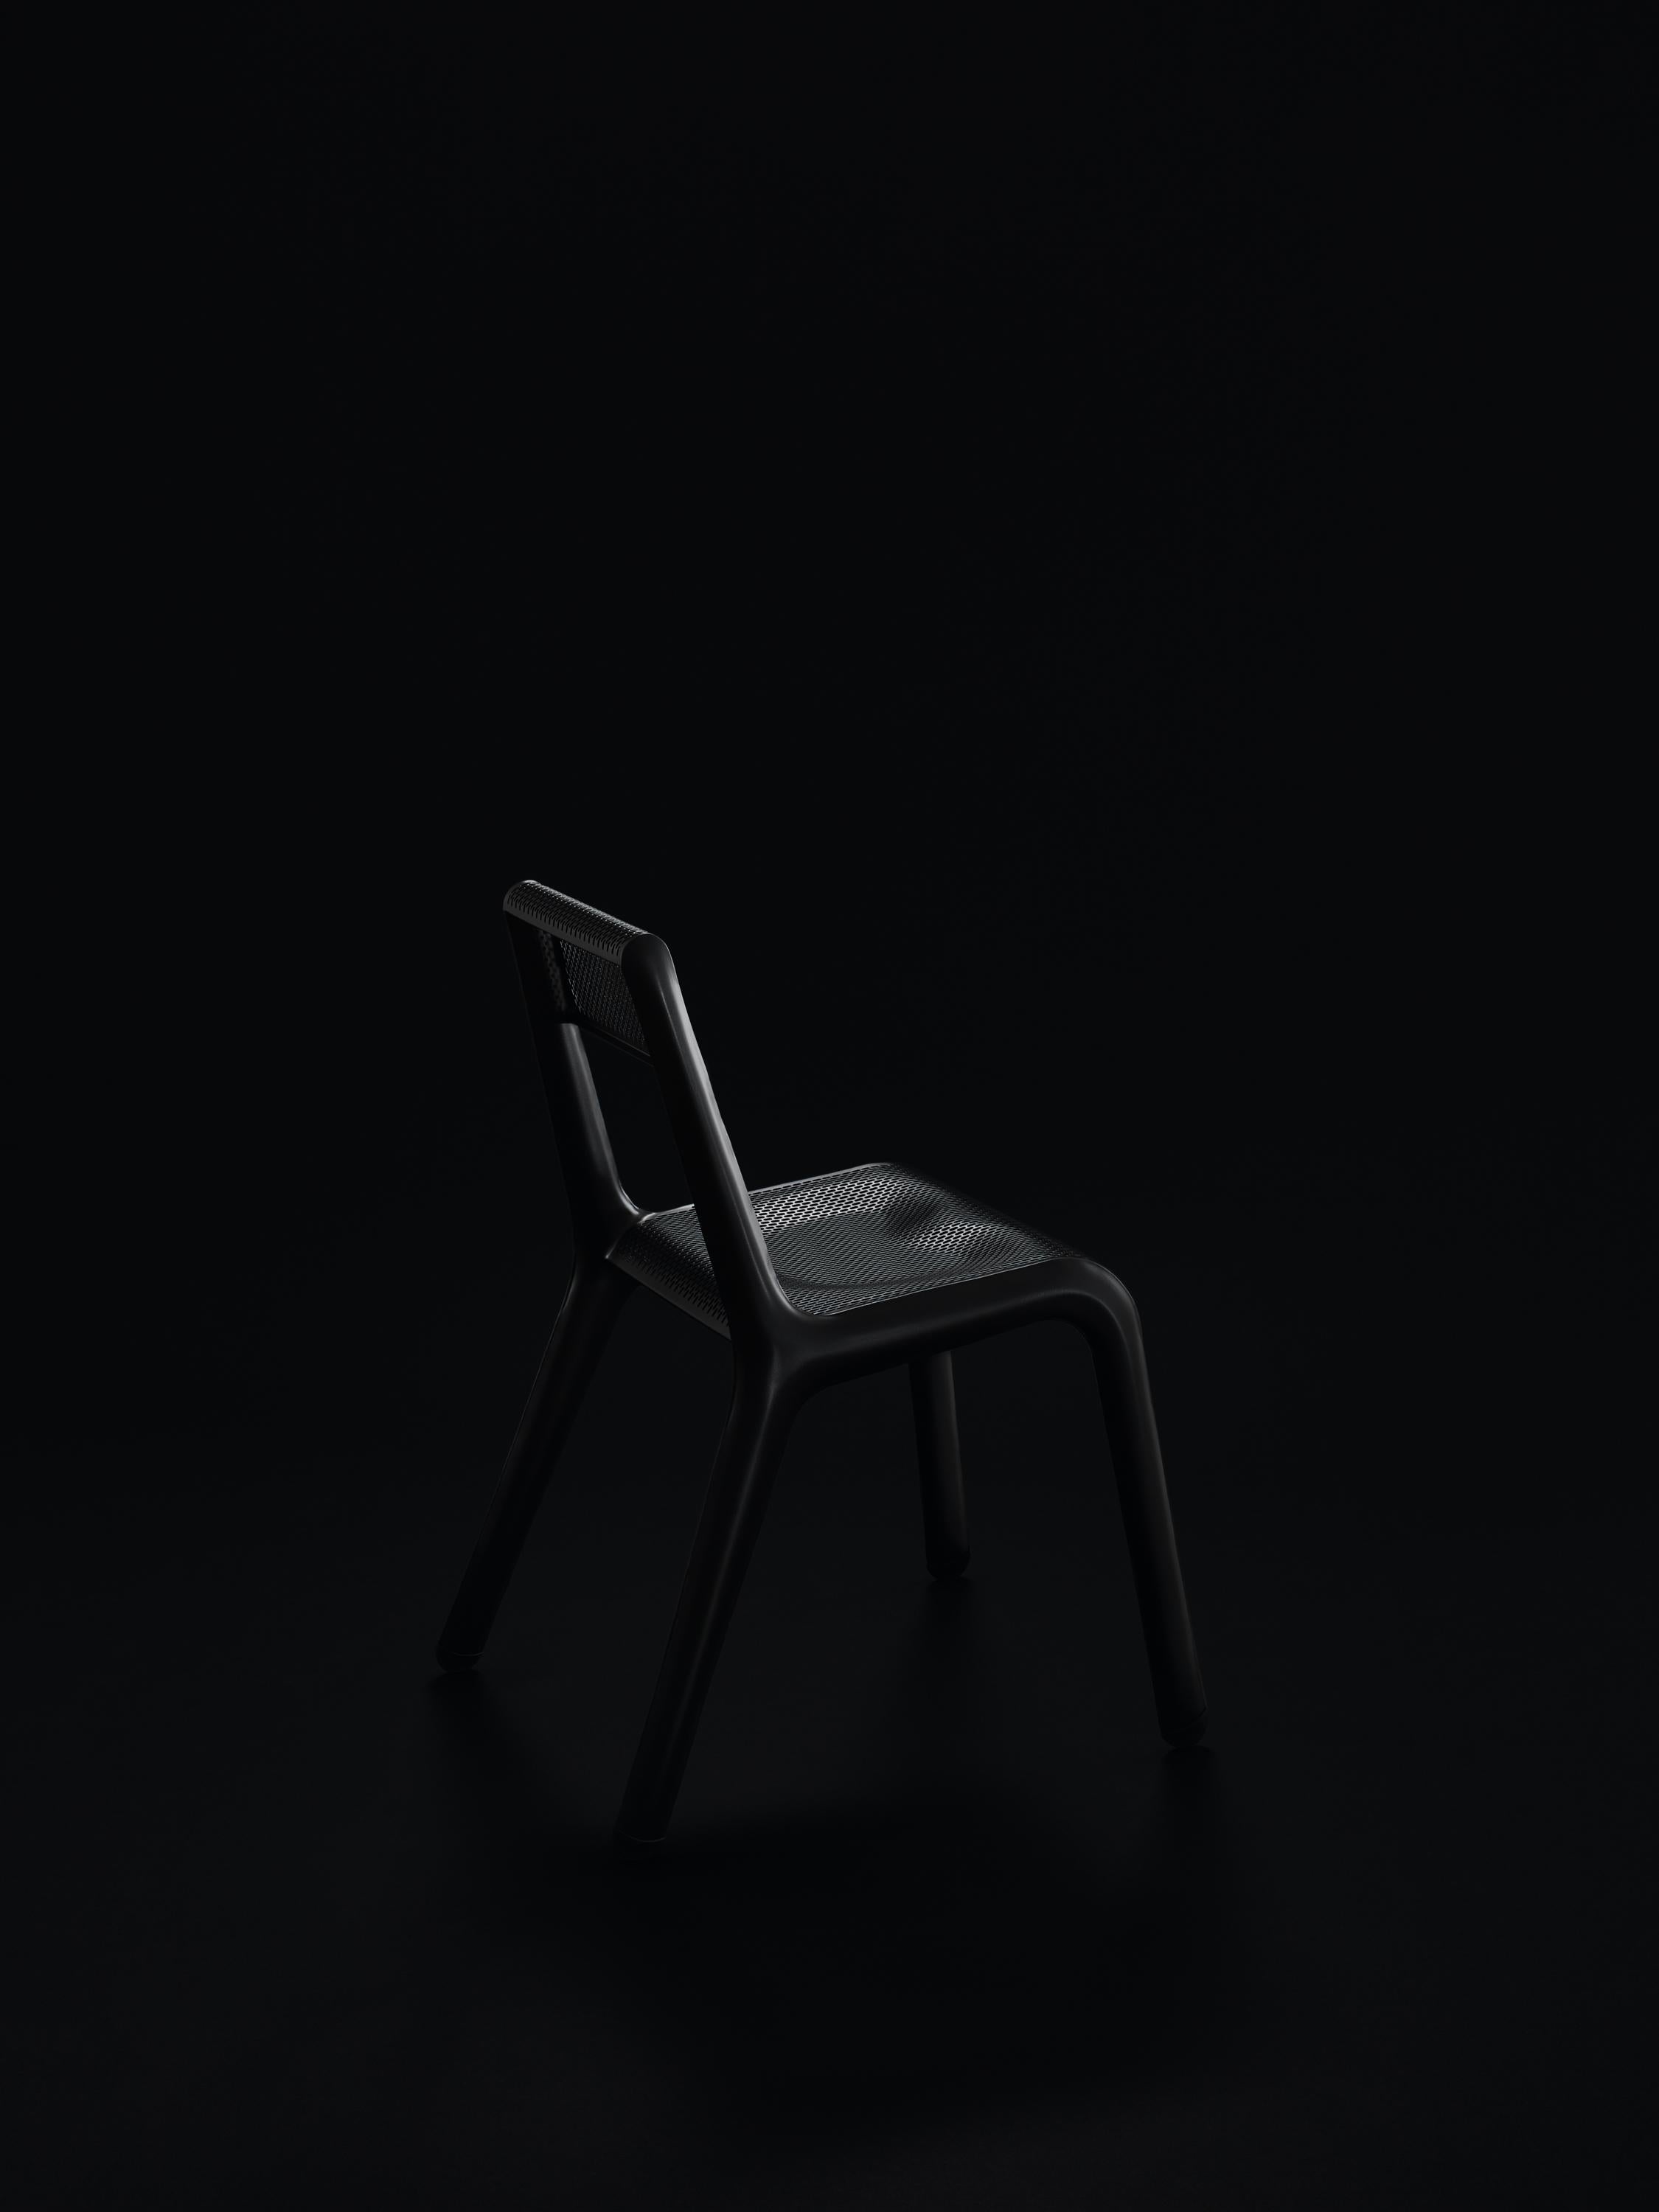 Chaise Anodique Ultraleggera noire de Zieta
Dimensions : P 58 x L 49 x H 78 cm 
Matériau : Aluminium. 
Finition : Revêtement en poudre.
Disponible dans d'autres couleurs. Disponible également en version Leggera.


ULTRALEGGERA est une chaise